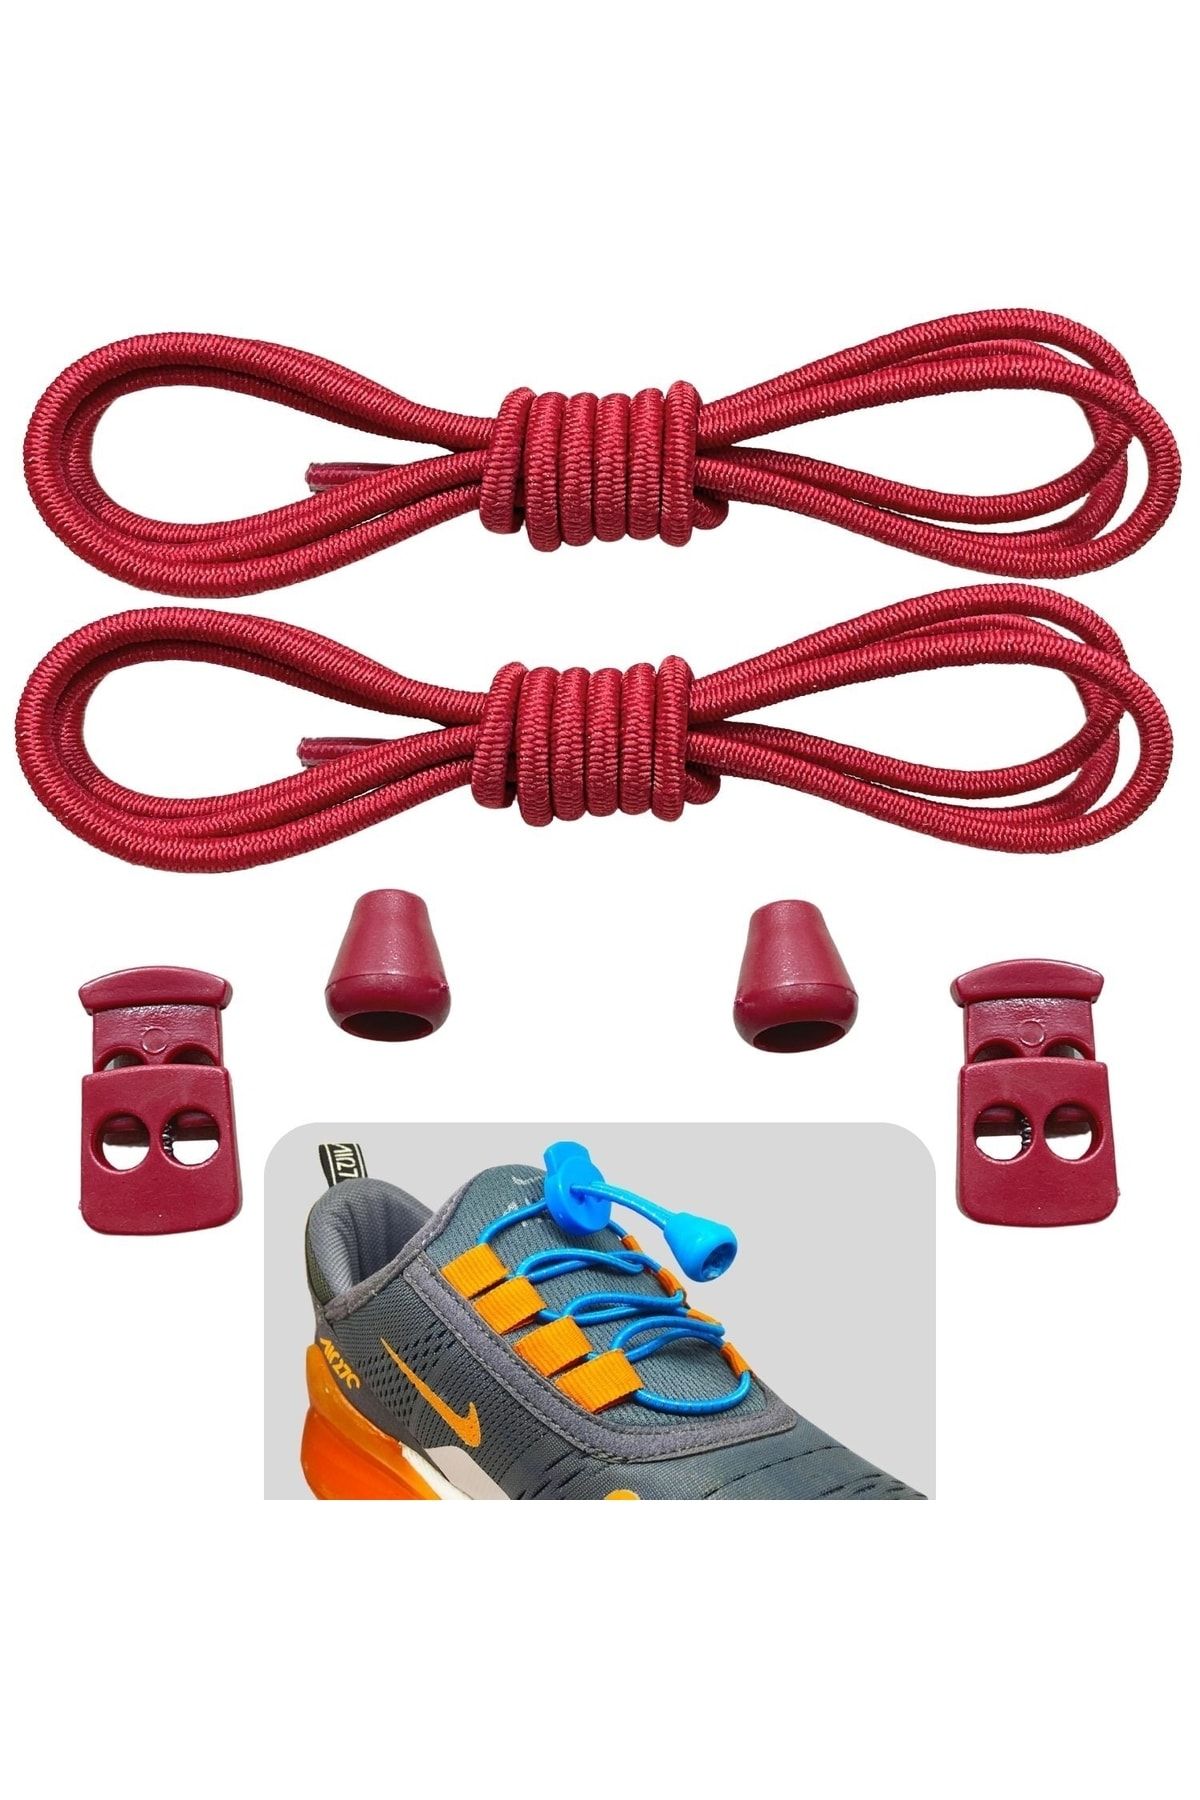 ipekbazaar Kırmızı Akıllı Bağcık, Pratik Lastikli Ayakkabı Bağcığı, Spor, Çocuk, Klasik Ve Bot Bağcığı, 1 Çift